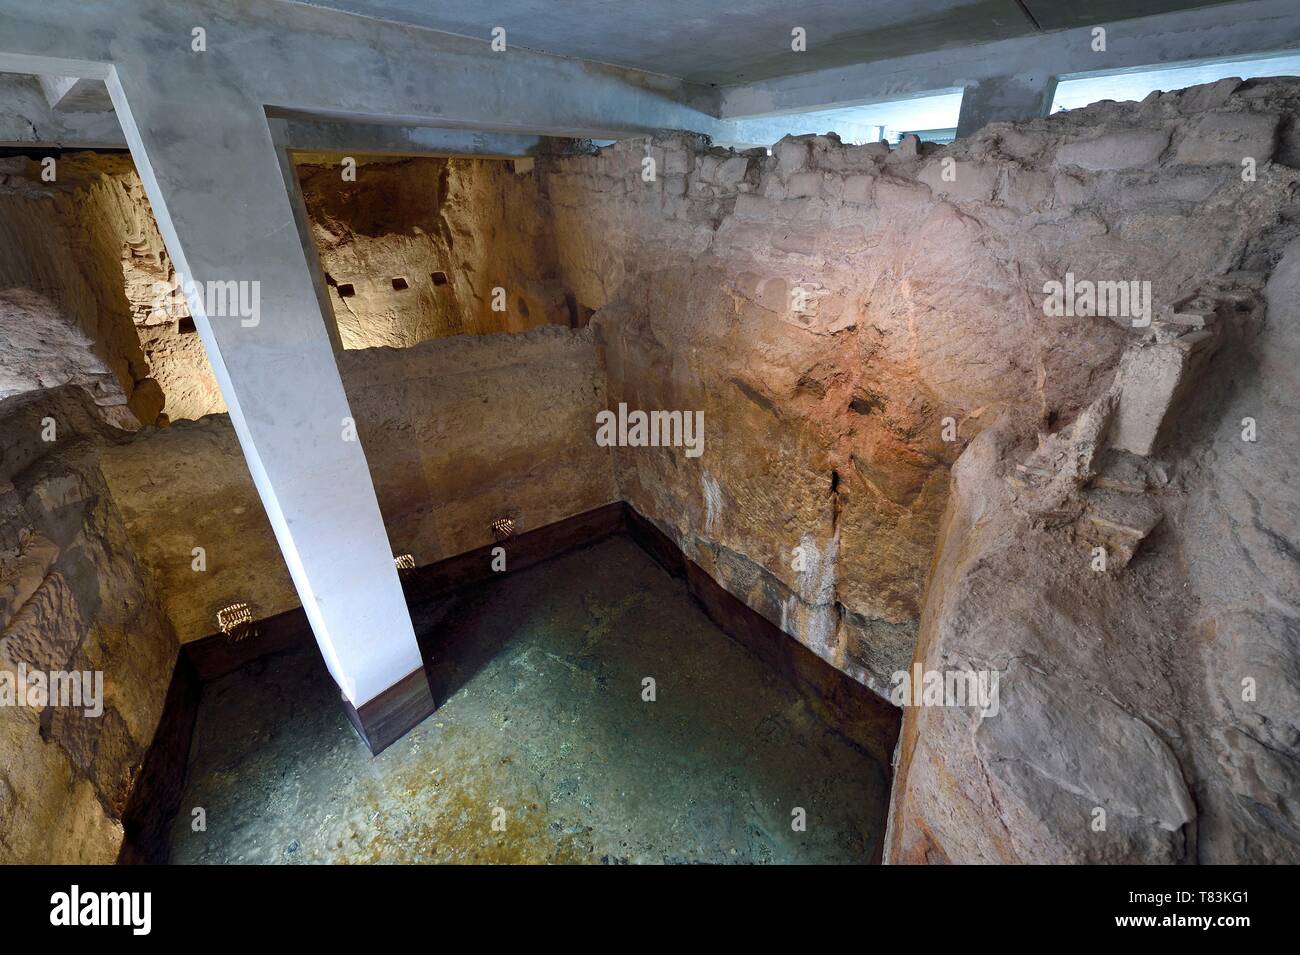 Frankreich, Var, Frejus, Forum Julii, der Krypta der Fischteich und die Wasserversorgung aus der Römerzeit, der filter Becken Stockfoto